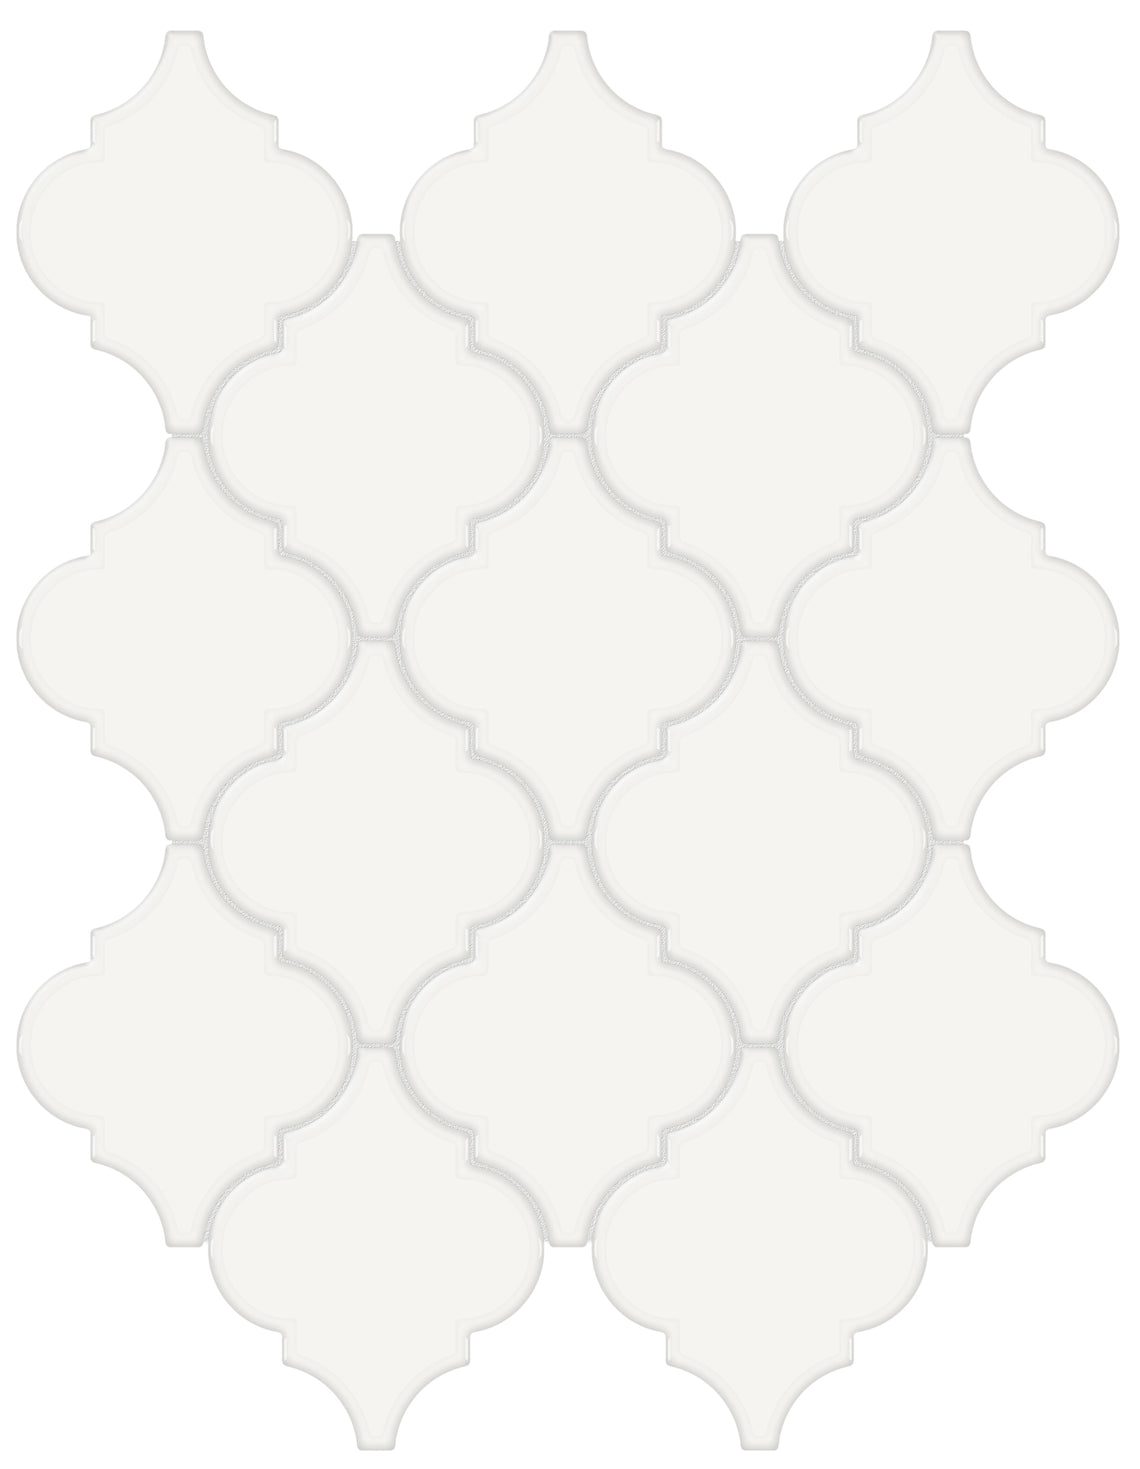 Soho Canvas White Beveled Arabesque Glossy Glazed Porcelain Mosaic